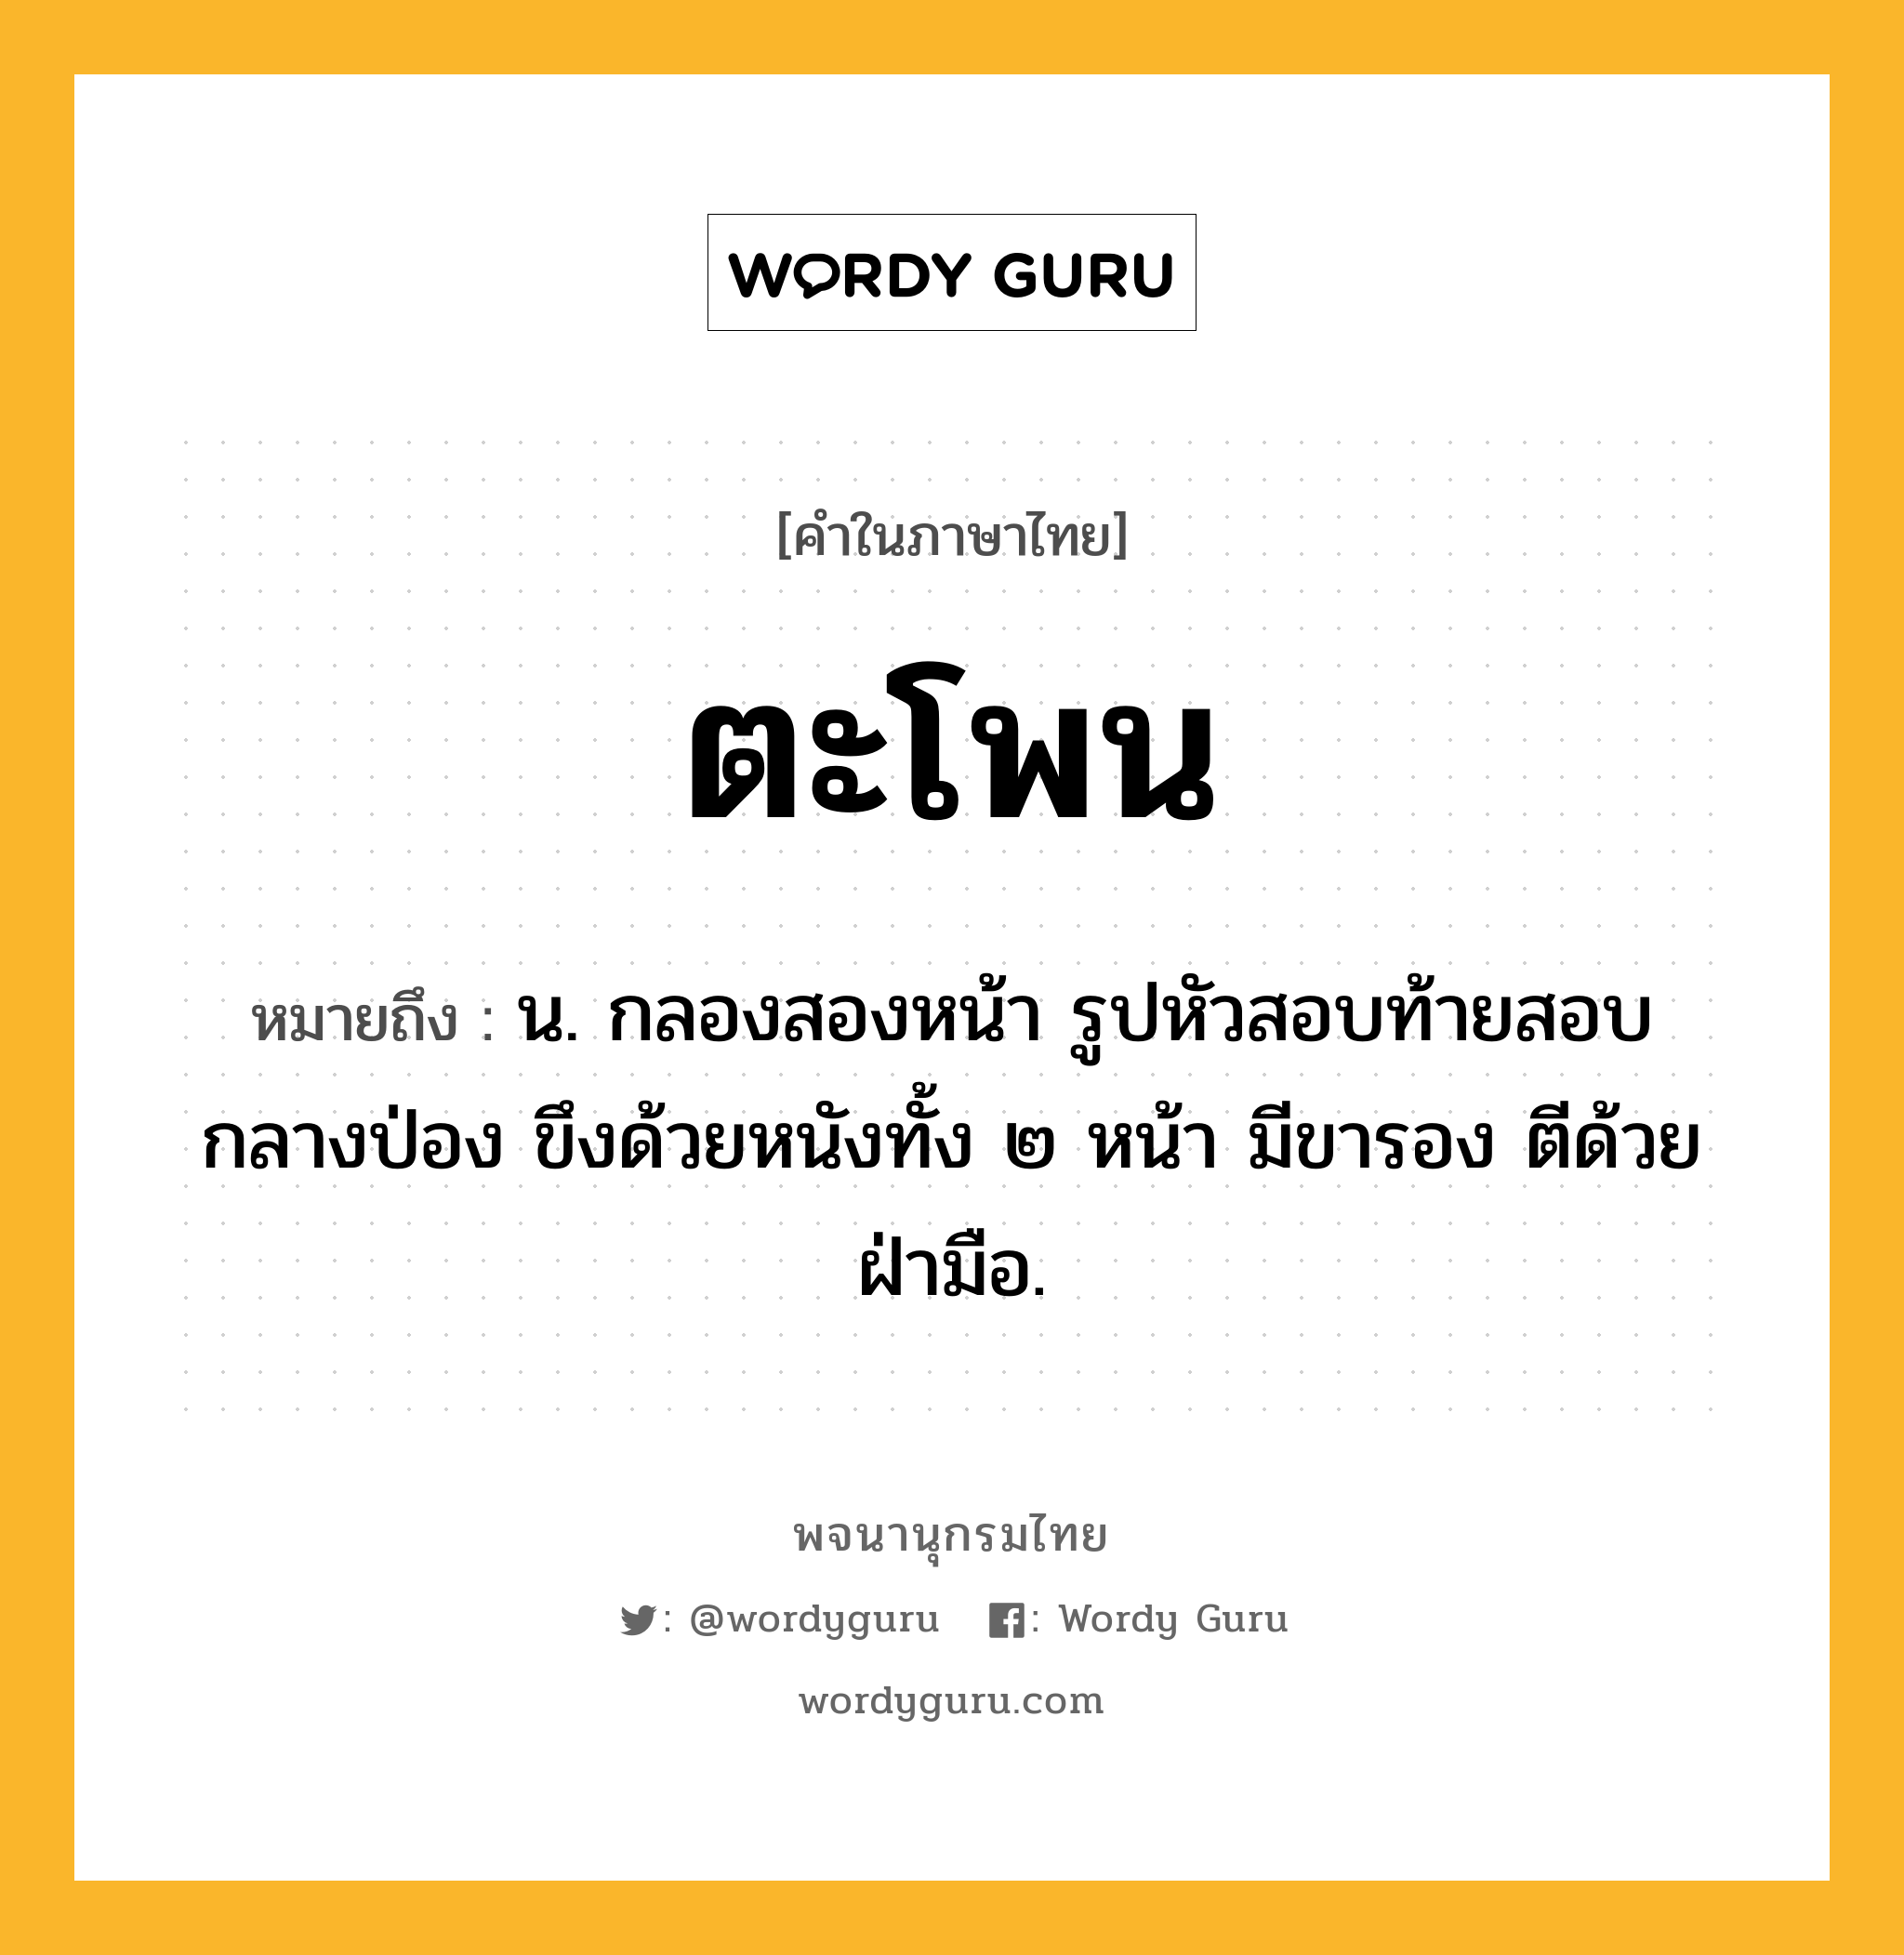 ตะโพน ความหมาย หมายถึงอะไร?, คำในภาษาไทย ตะโพน หมายถึง น. กลองสองหน้า รูปหัวสอบท้ายสอบกลางป่อง ขึงด้วยหนังทั้ง ๒ หน้า มีขารอง ตีด้วยฝ่ามือ.